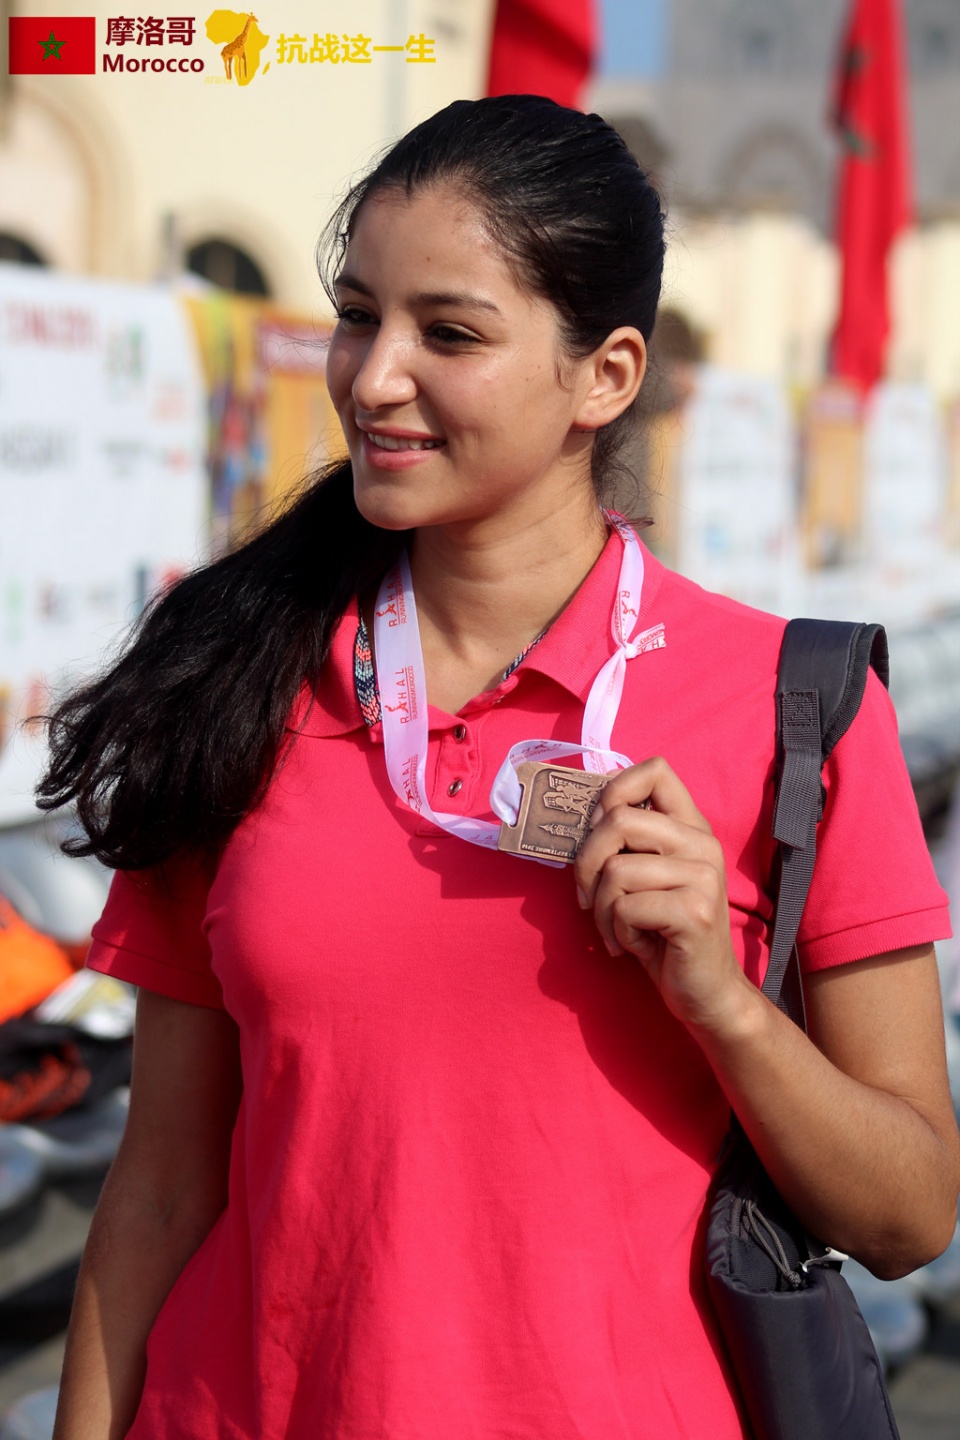 奔跑吧,妹纸!卡萨布兰卡国际马拉松,摩洛哥姑娘很漂亮